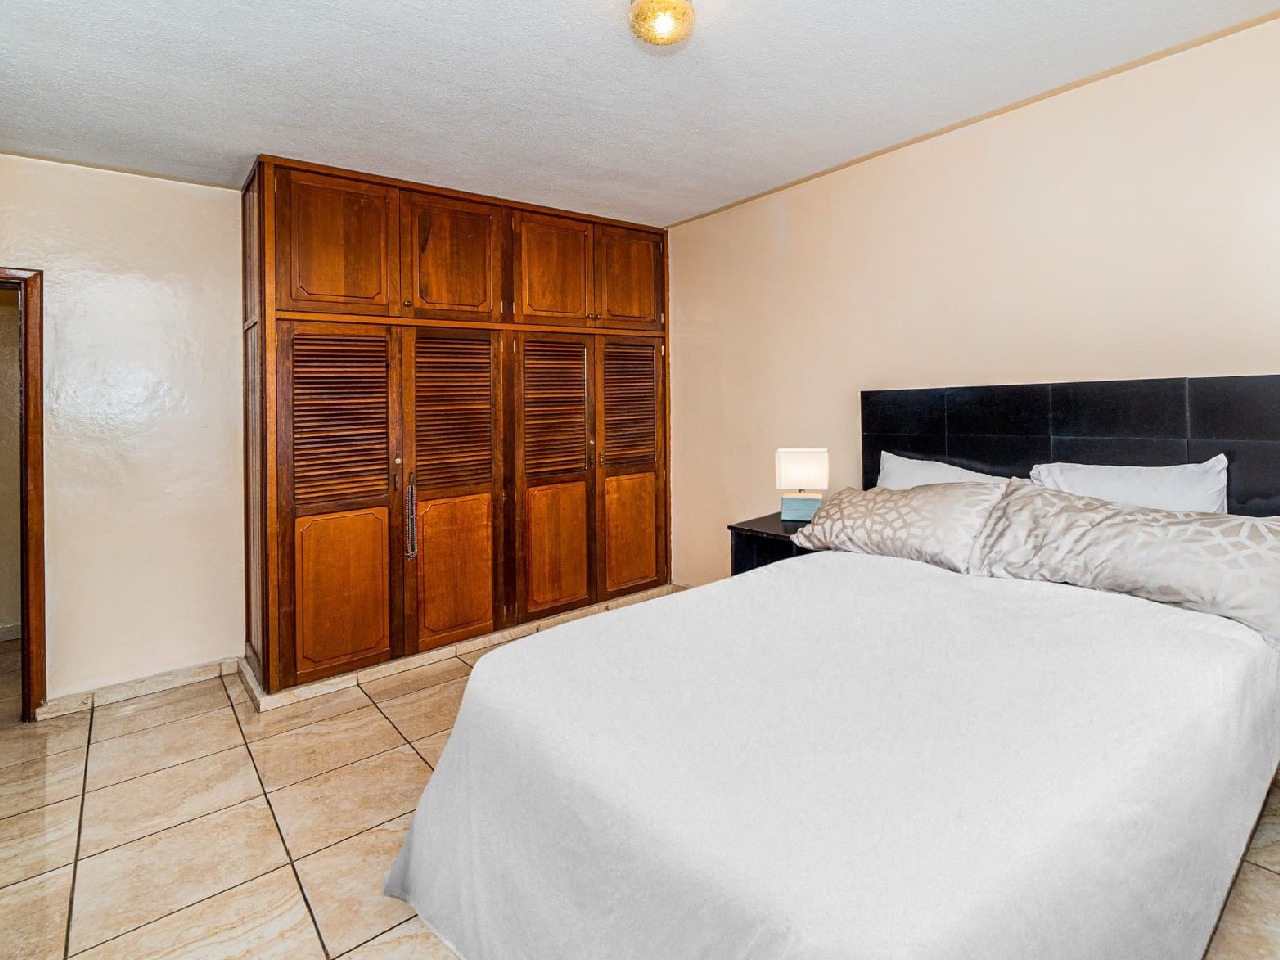 Habitación secundaria tiene una cama matrimonial con su respectiva cabezera color azul y también un closet de color de madera